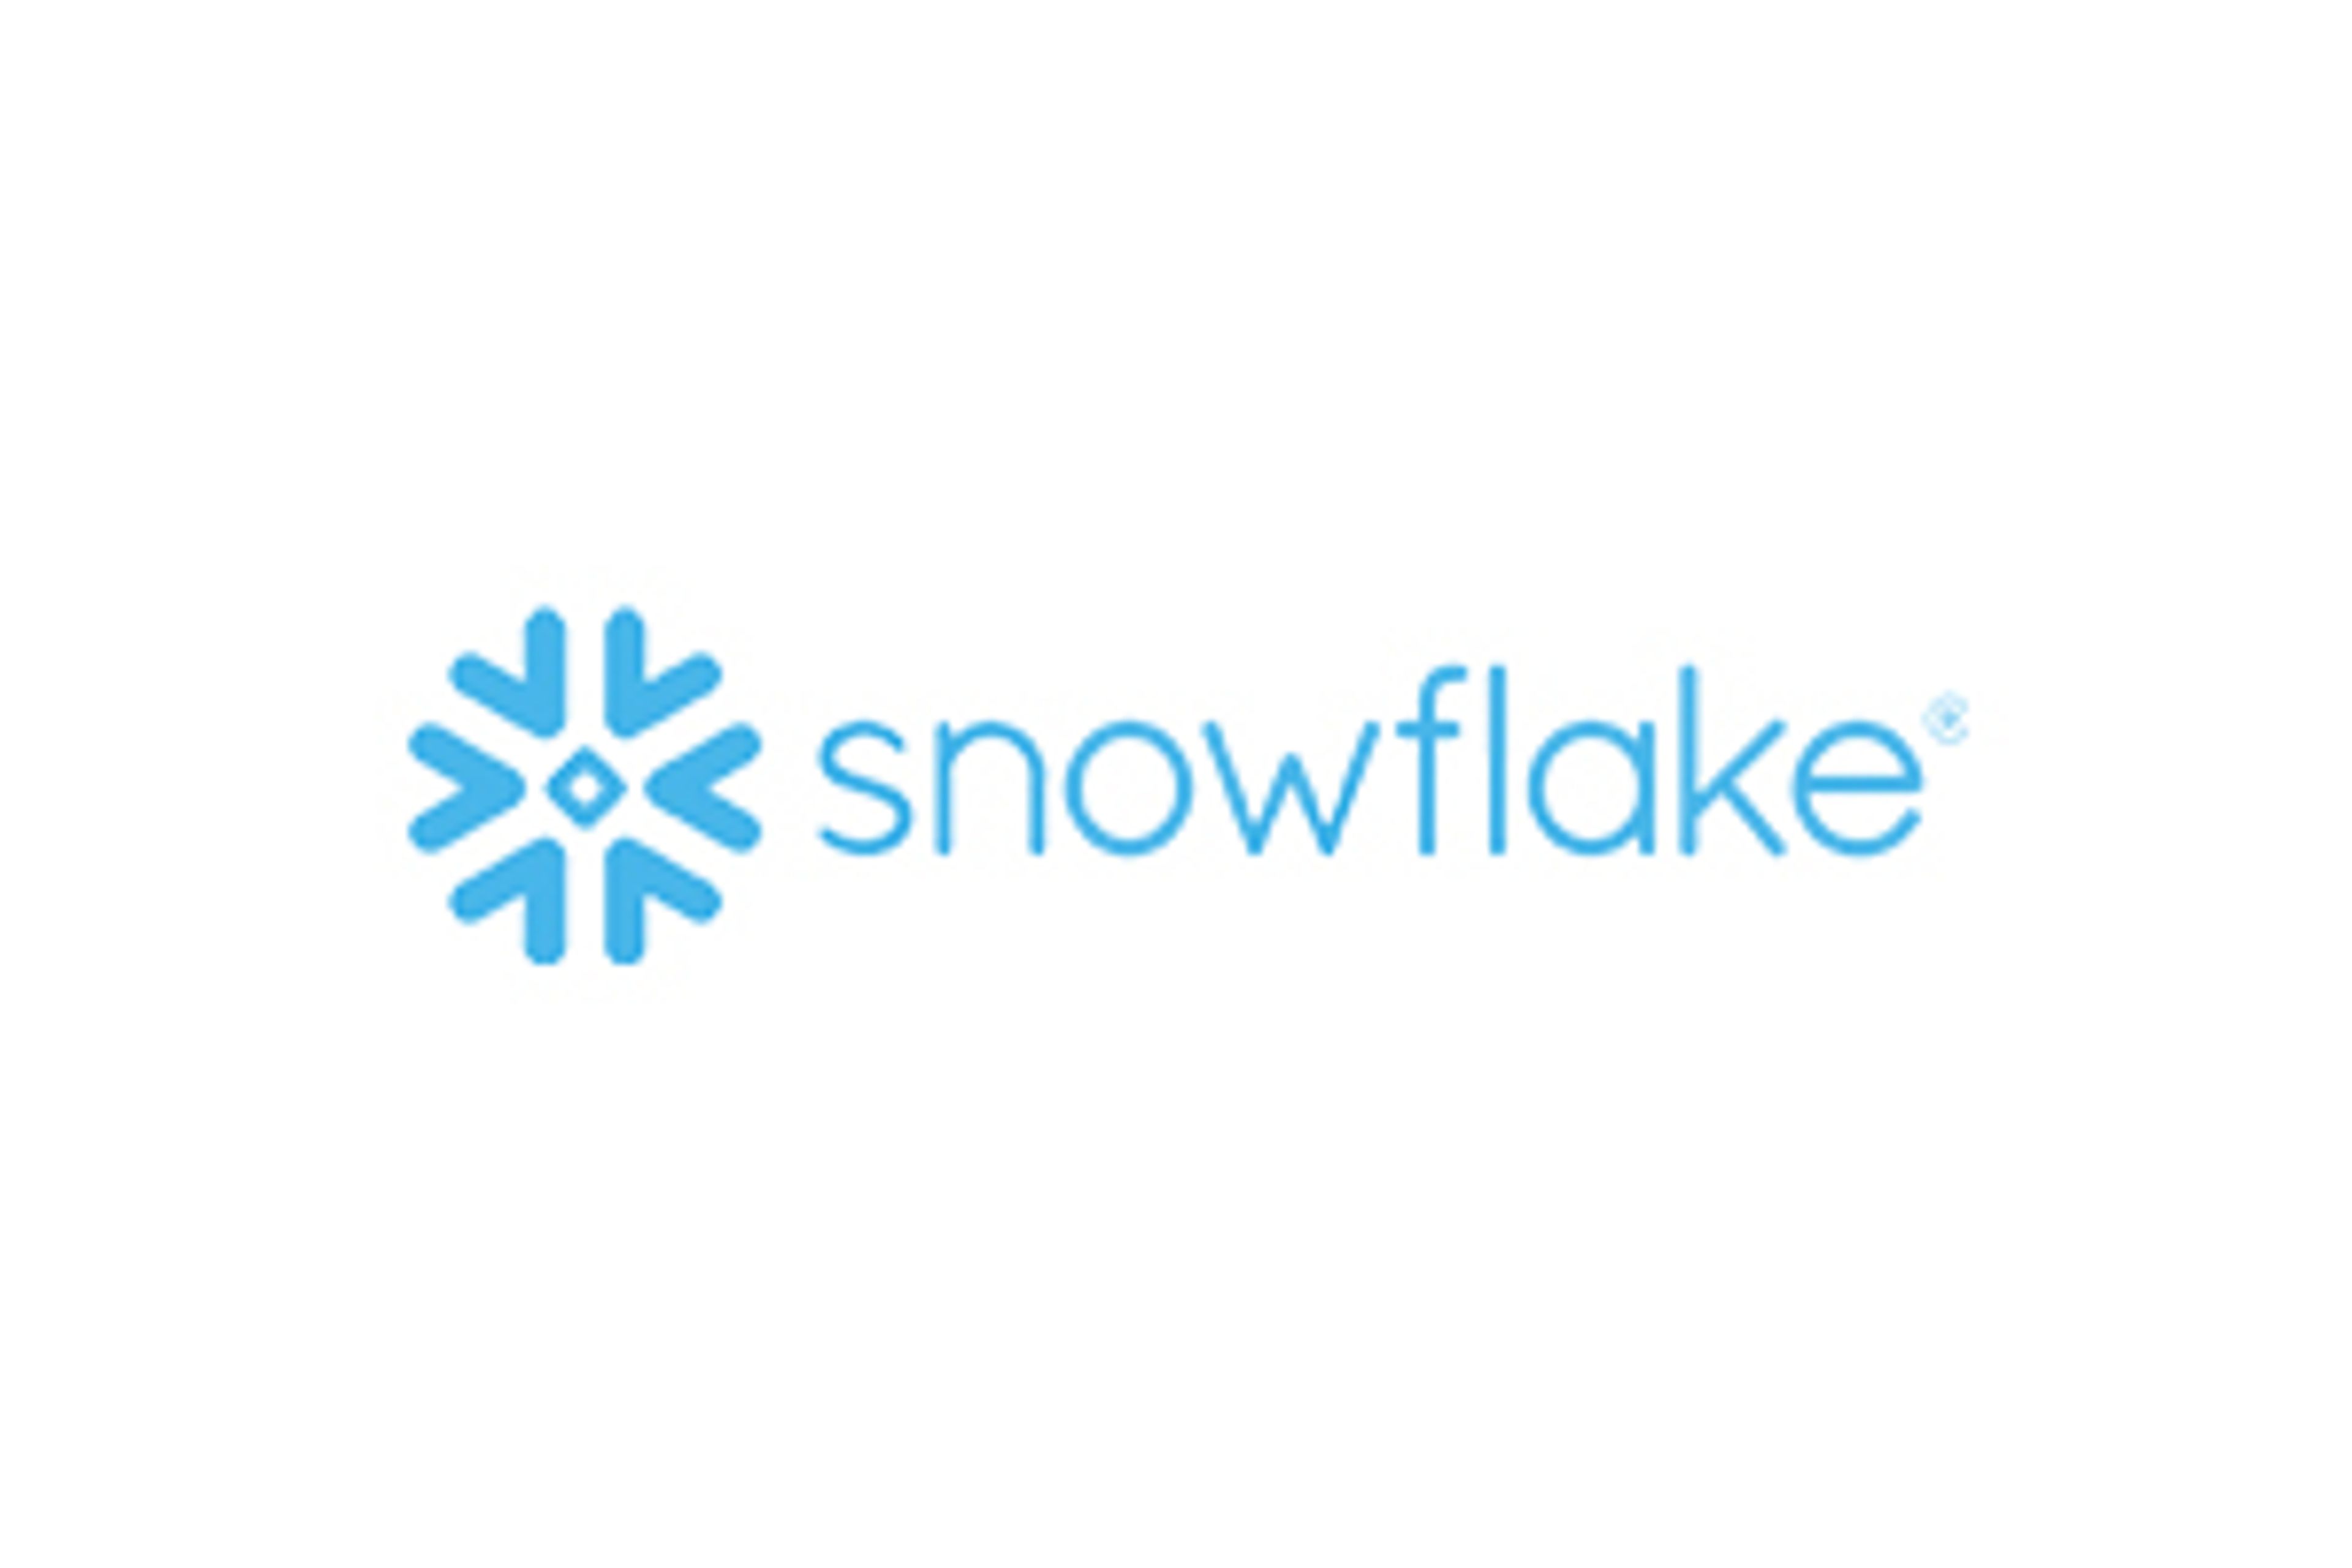 Snowflake est le premier Data Warehouse sur le cloud